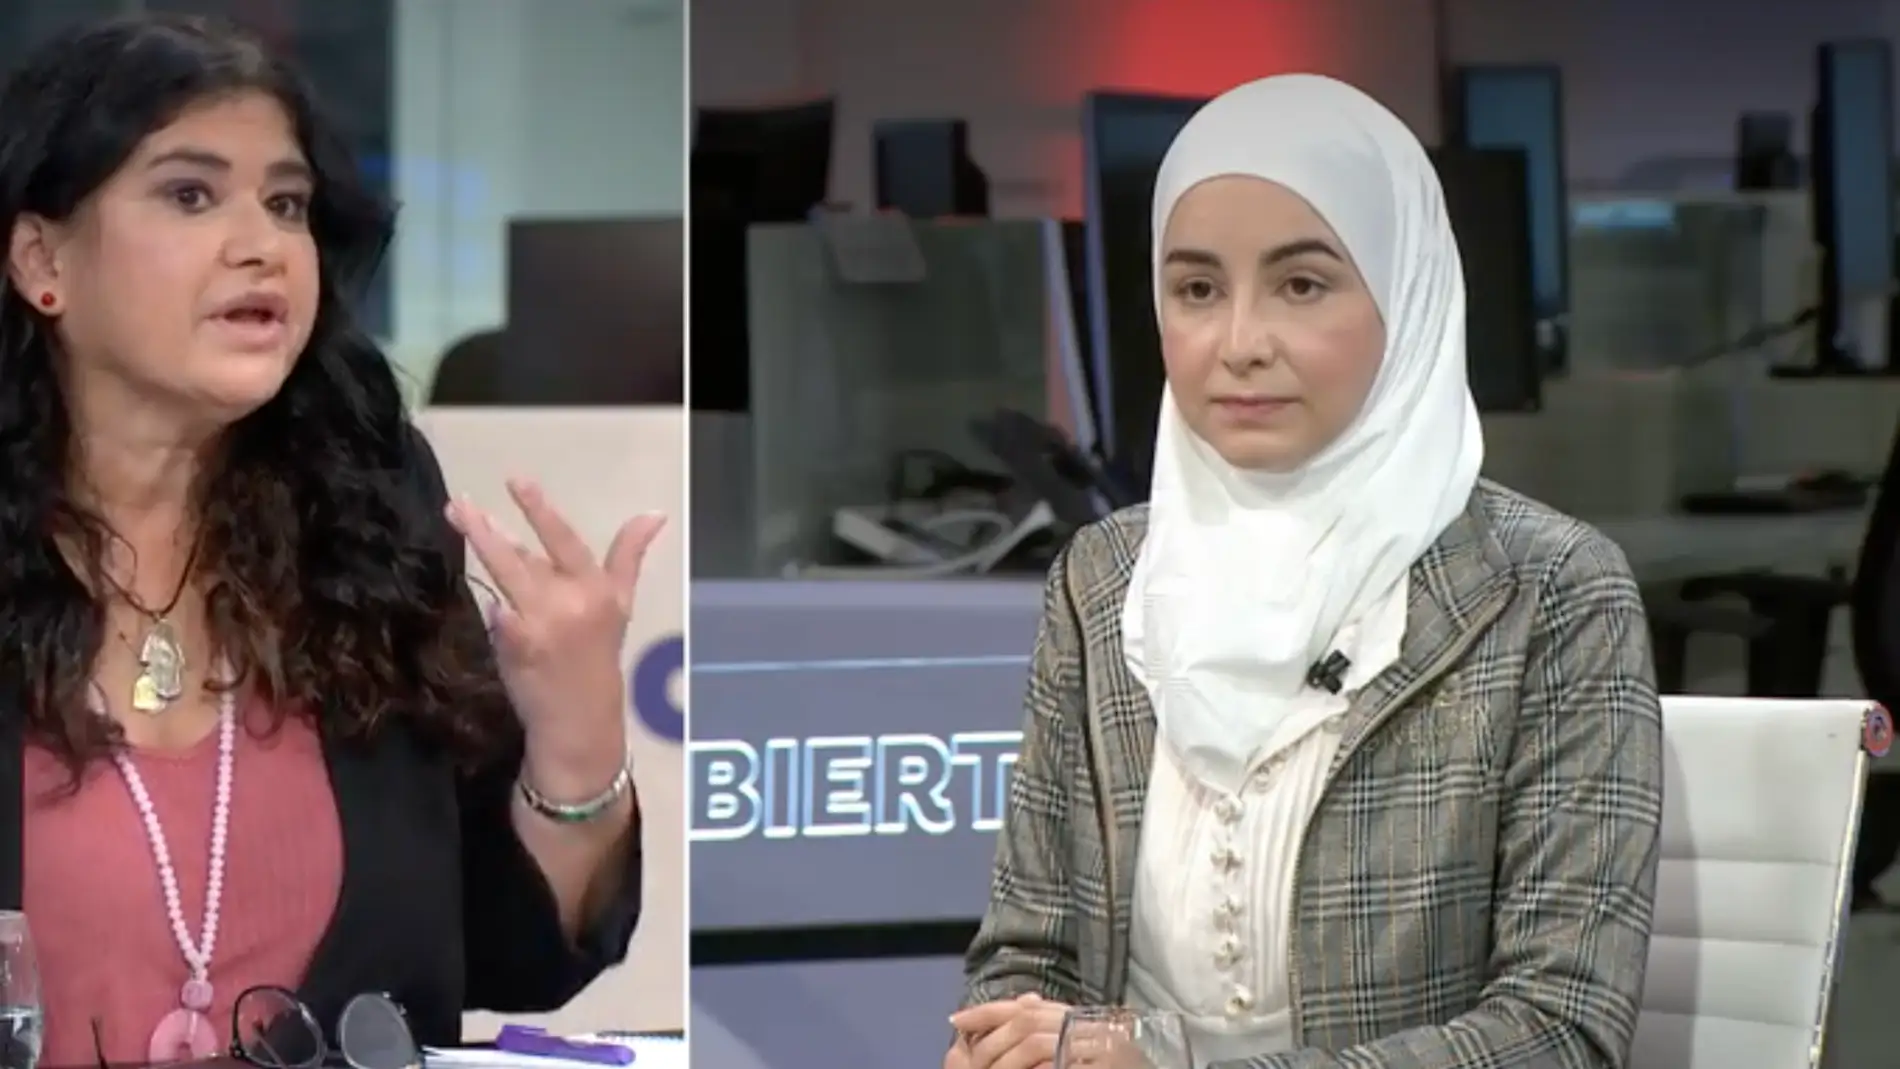 Una socióloga musulmana se pronuncia sobre el uso del hiyab: "Cada mujer con hiyab en España sufre una discriminación"